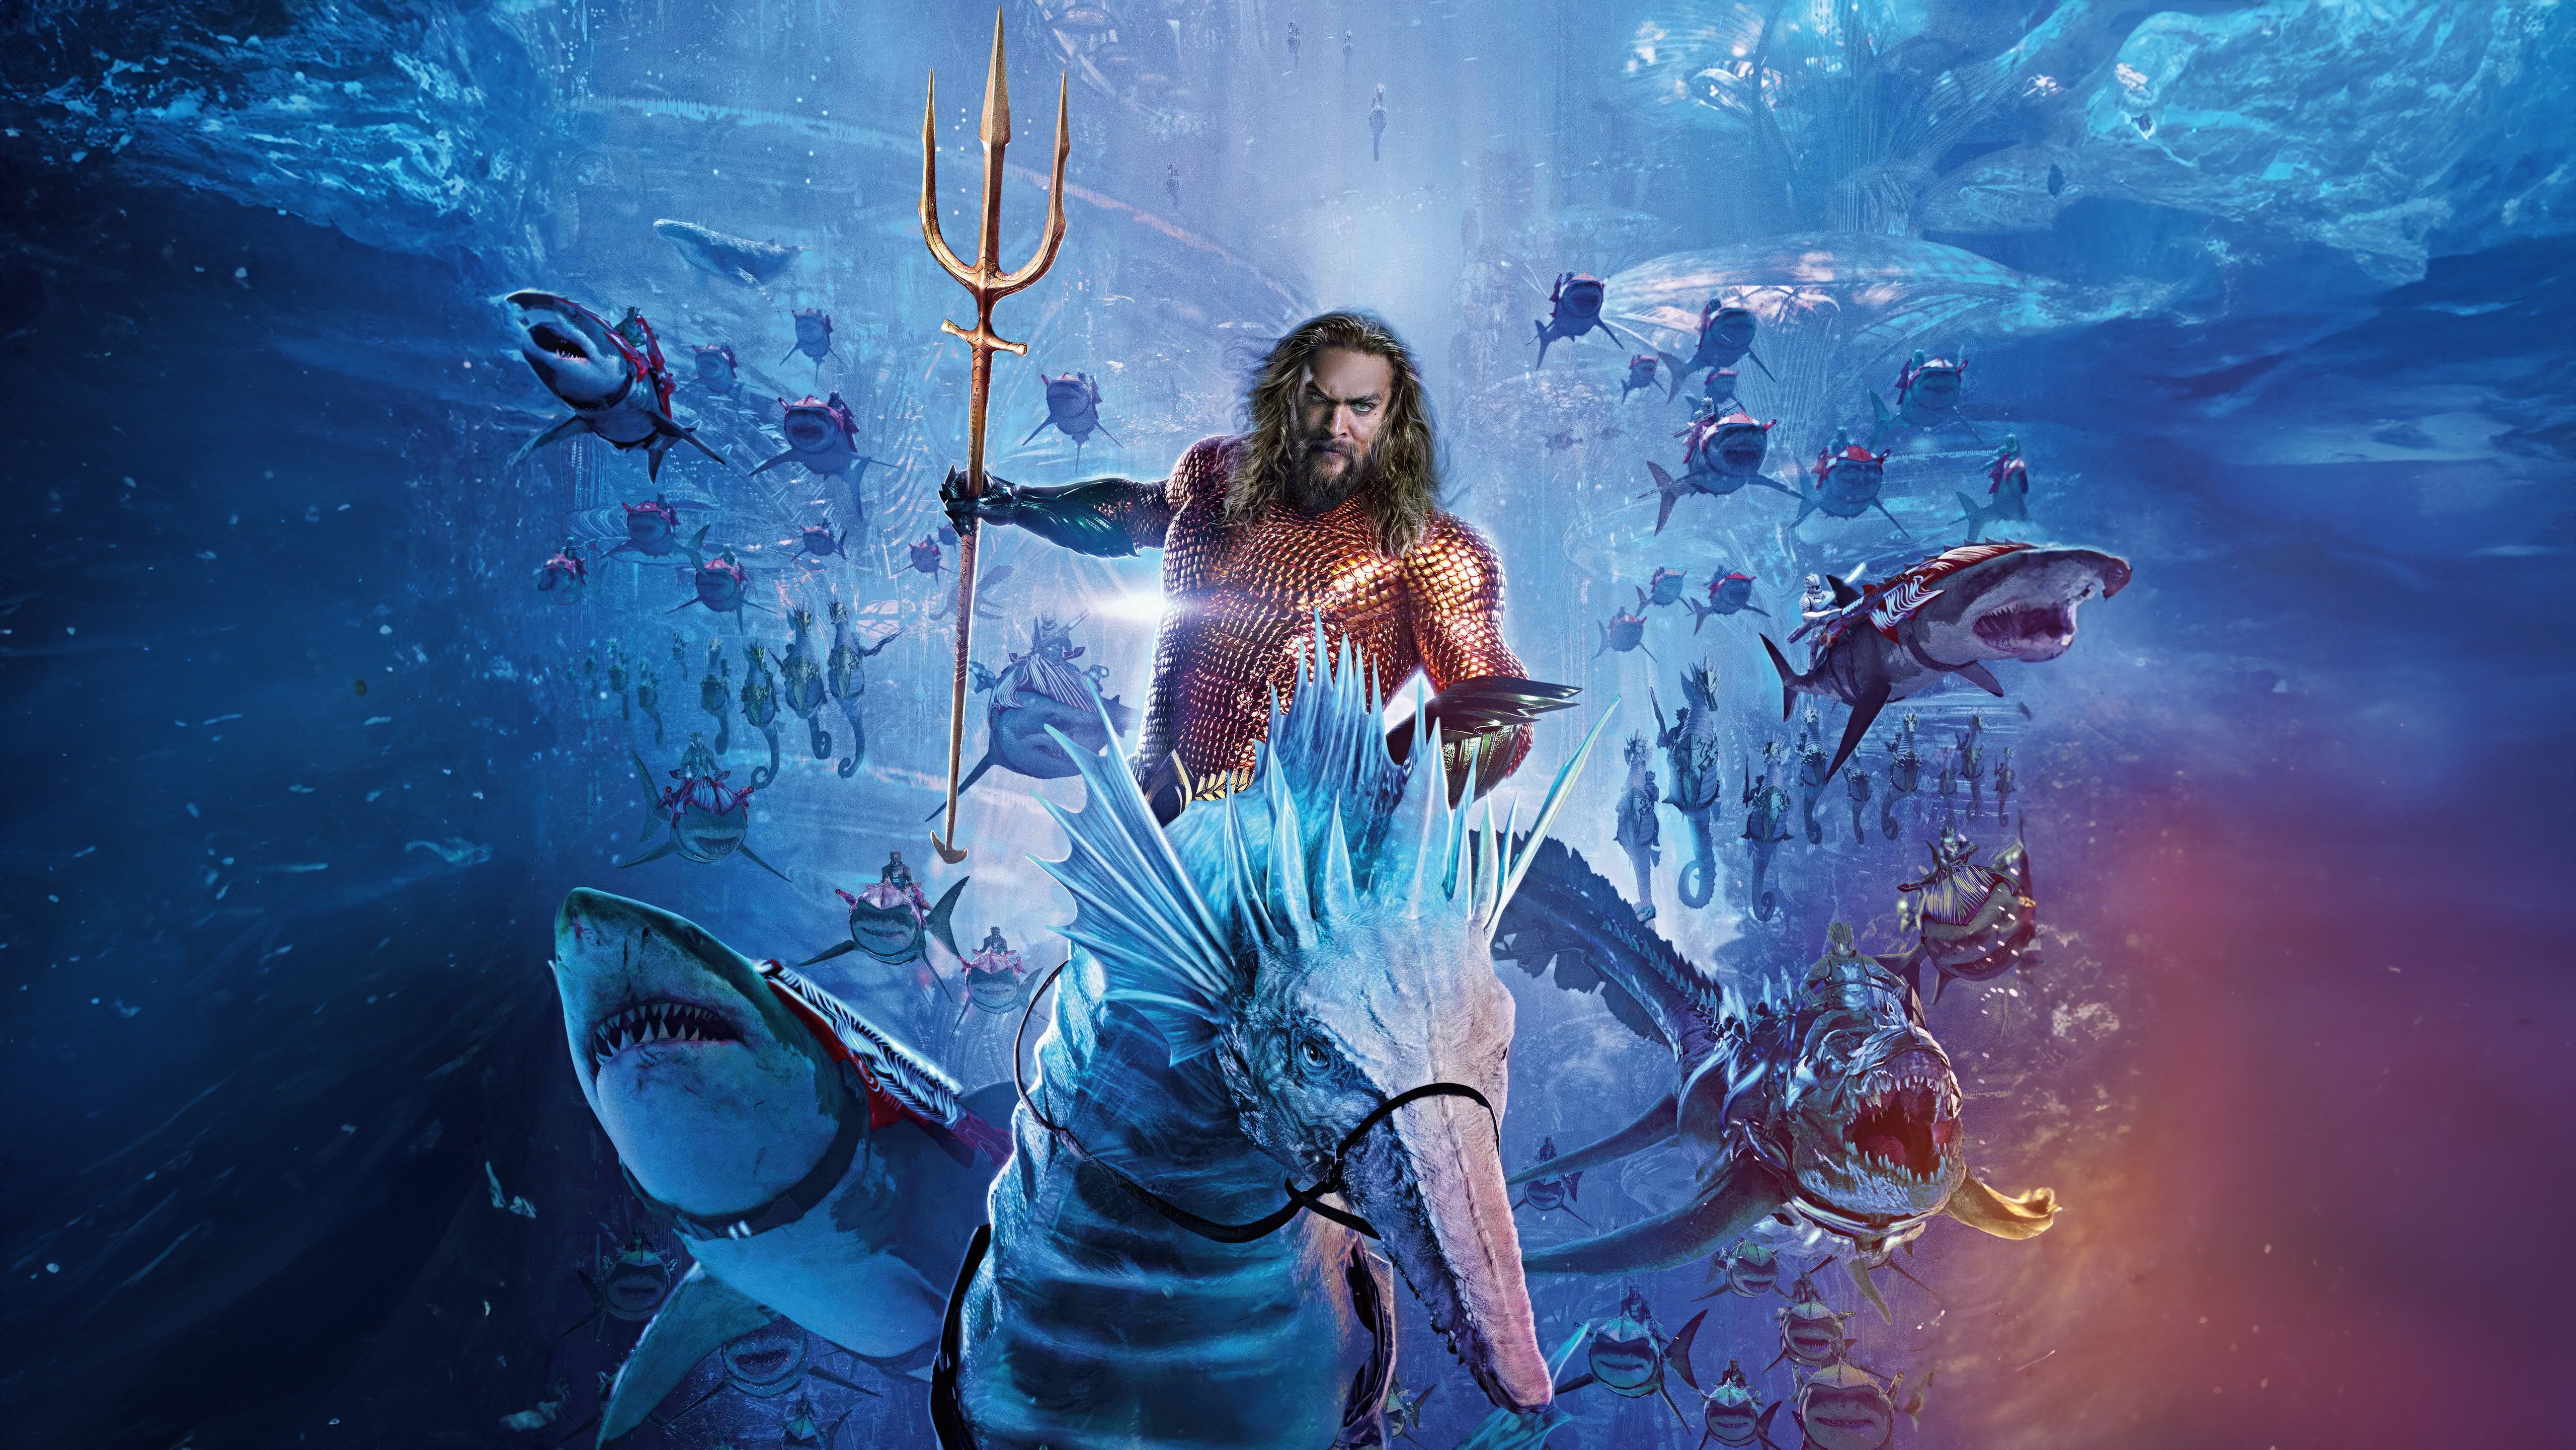 Fondos de pantalla Aquaman and the Lost Kingdom